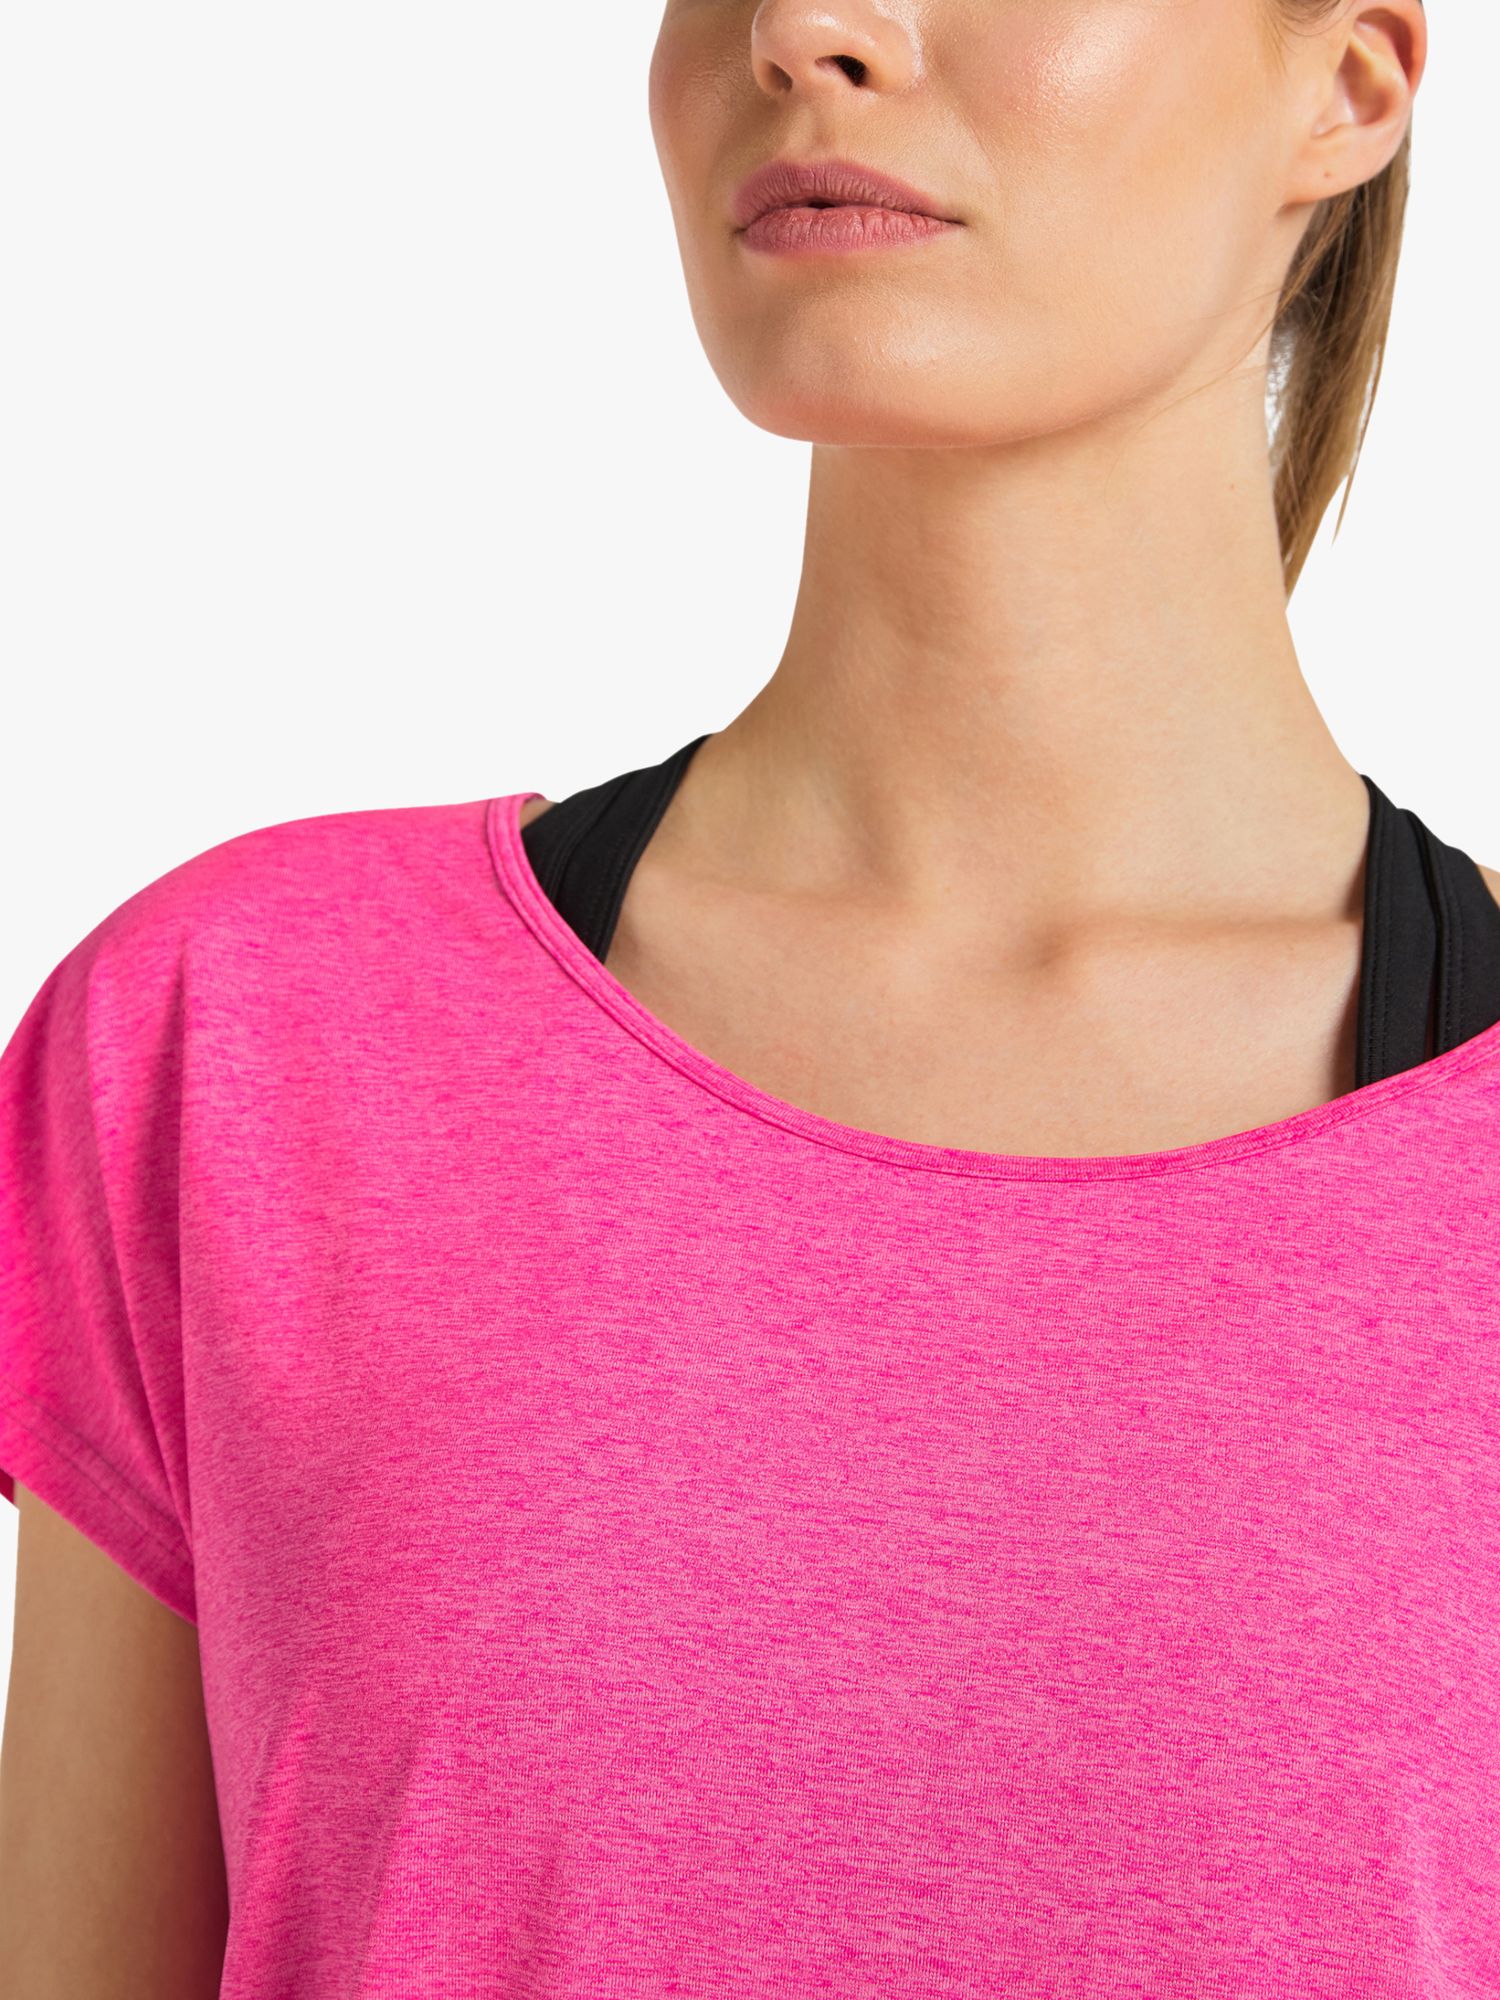 Venice Beach Ria Short Sleeve Gym Top, Fluorescent Pink, S